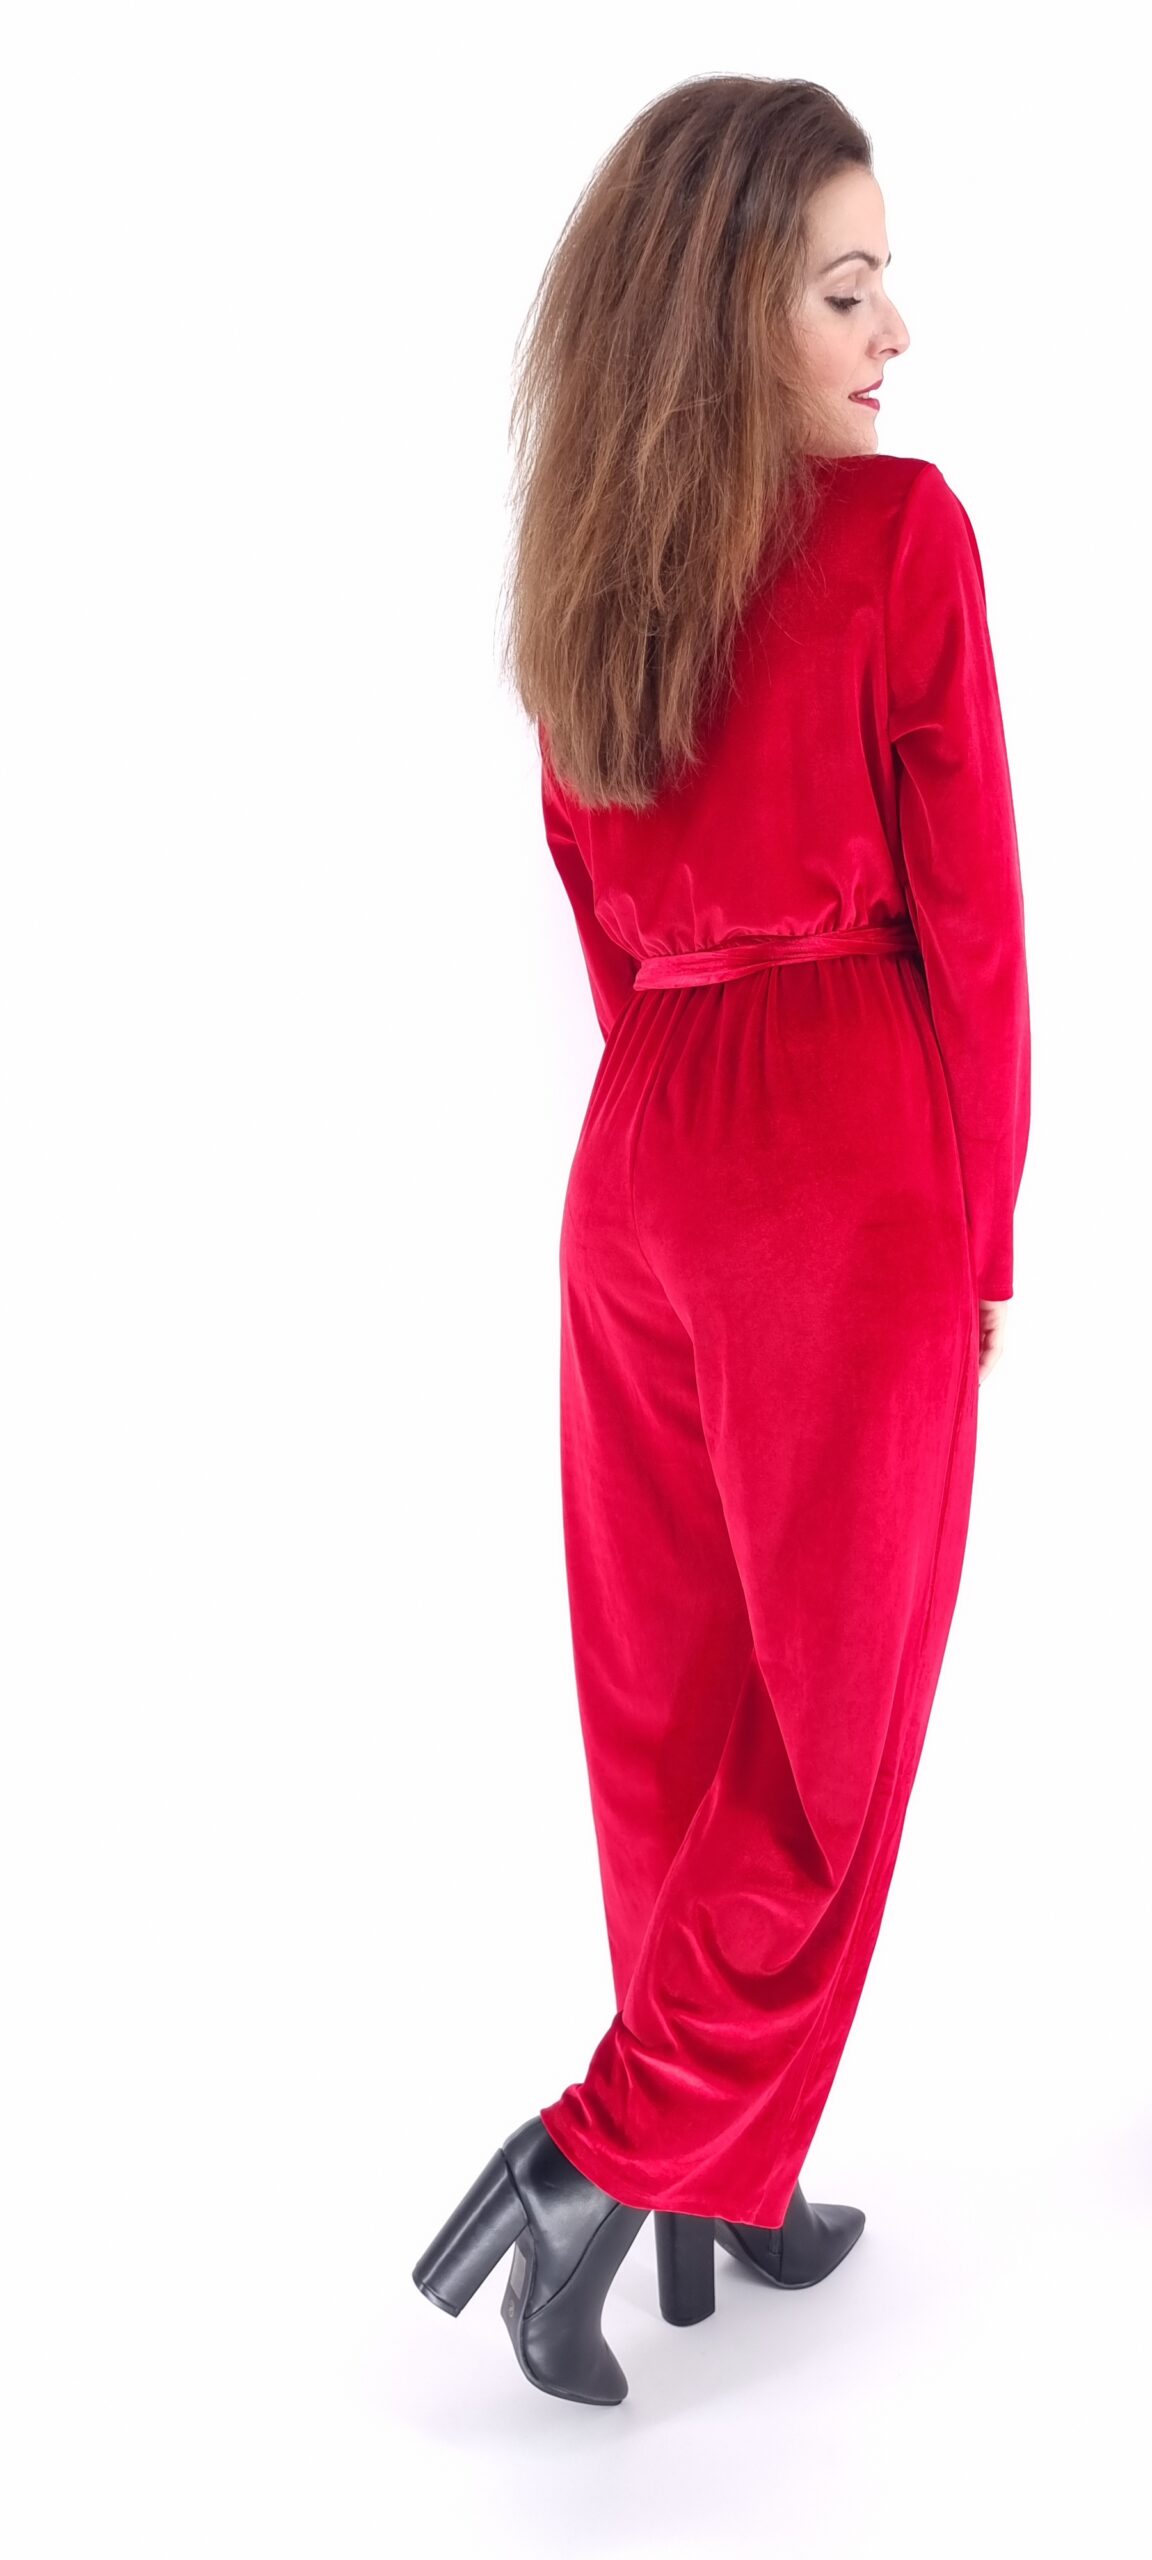 Ολόσωμη φόρμα βελουτέ κρουαζέ με ίδια ζώνη κόκκινο